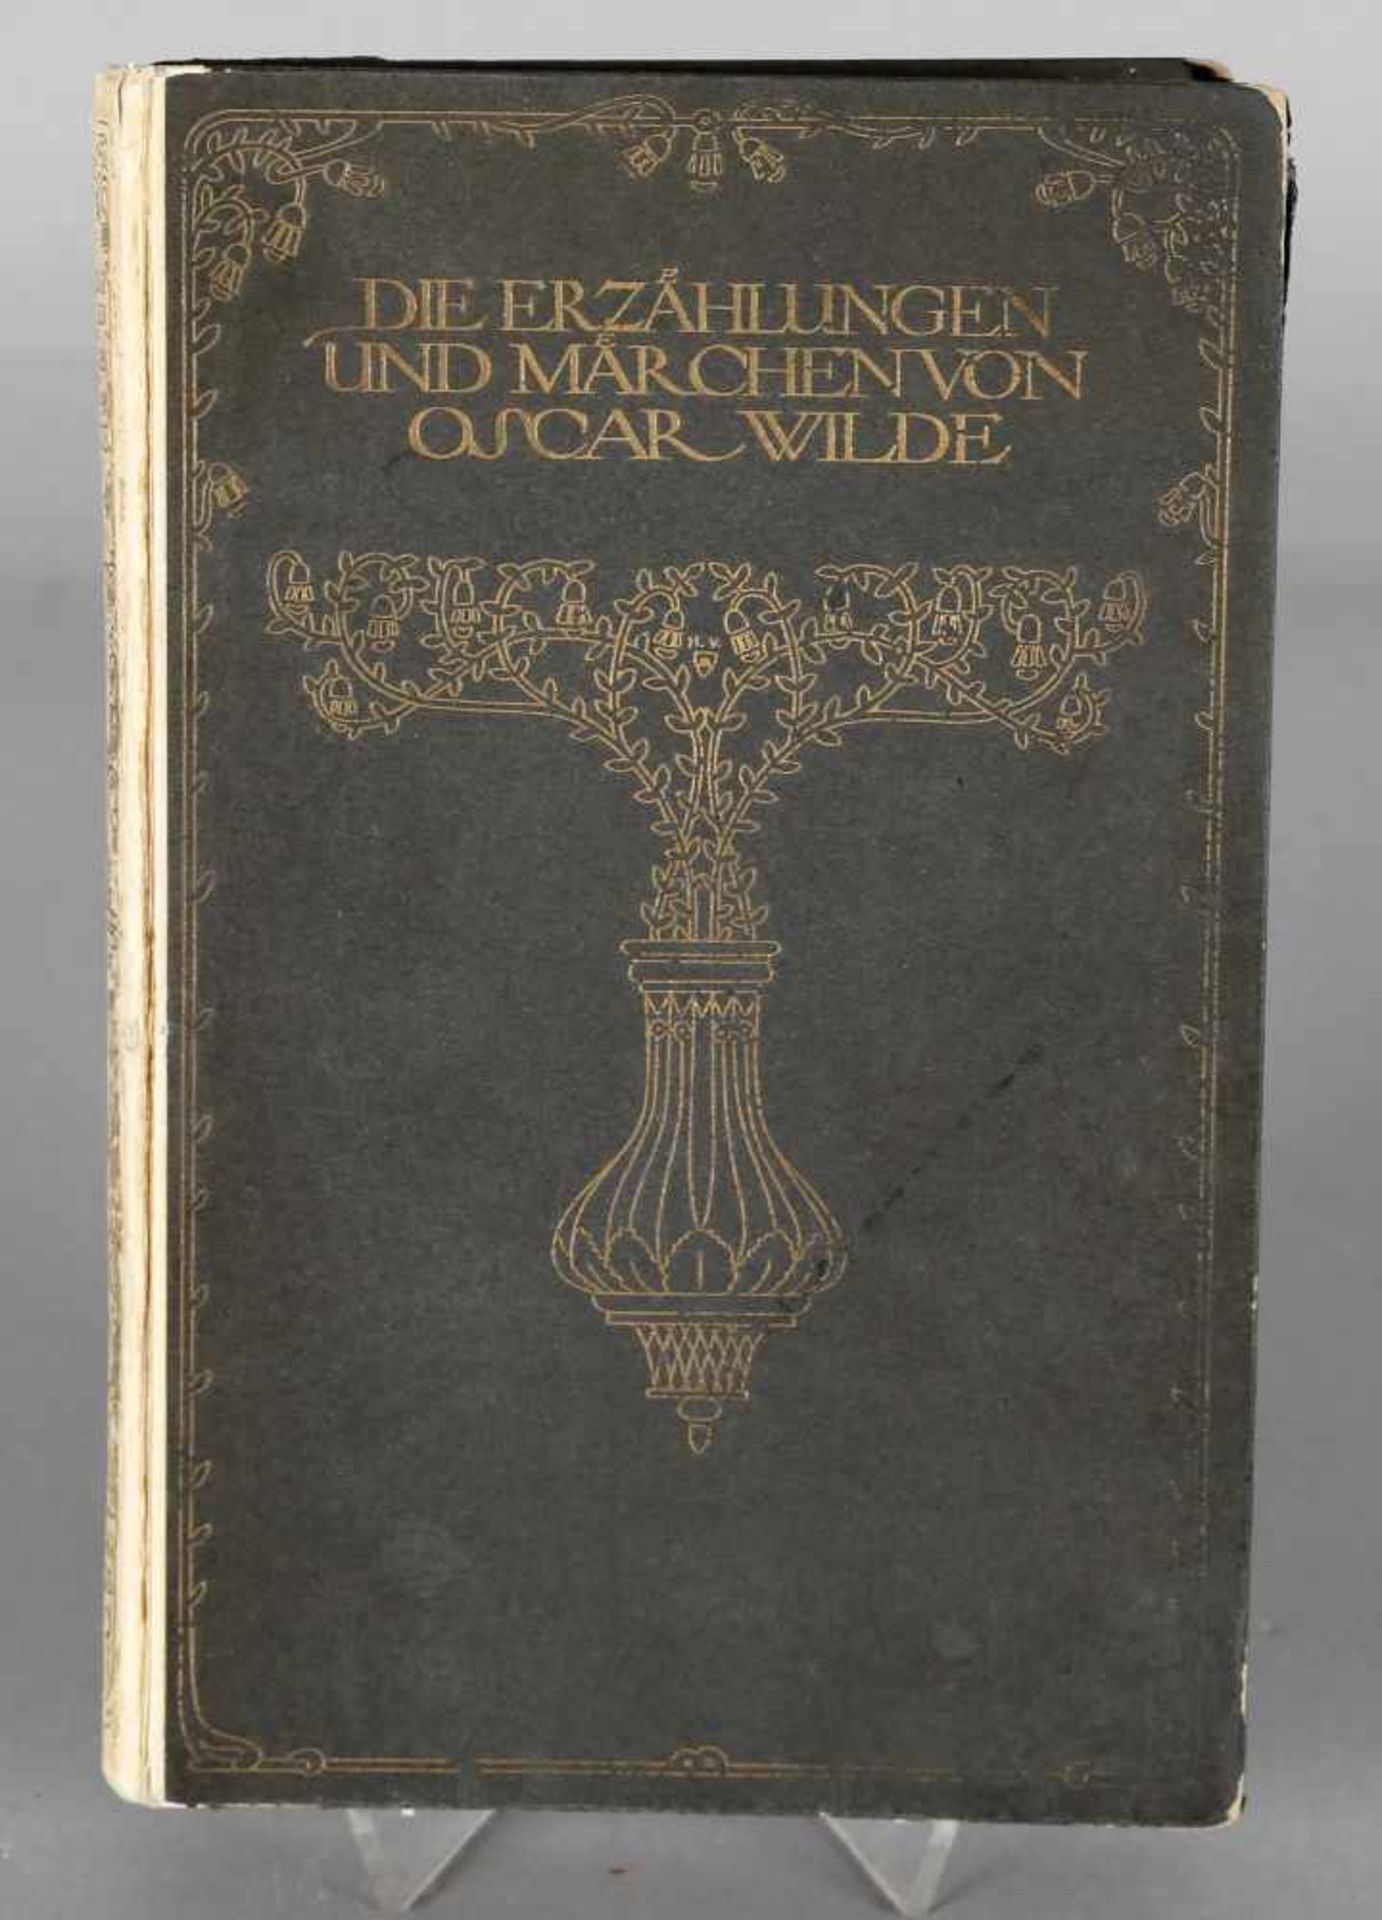 Oscar Wilde, Die Erzählungen und Märchen von Oscar Wilde, Insel Verlag Leipzig, 1910